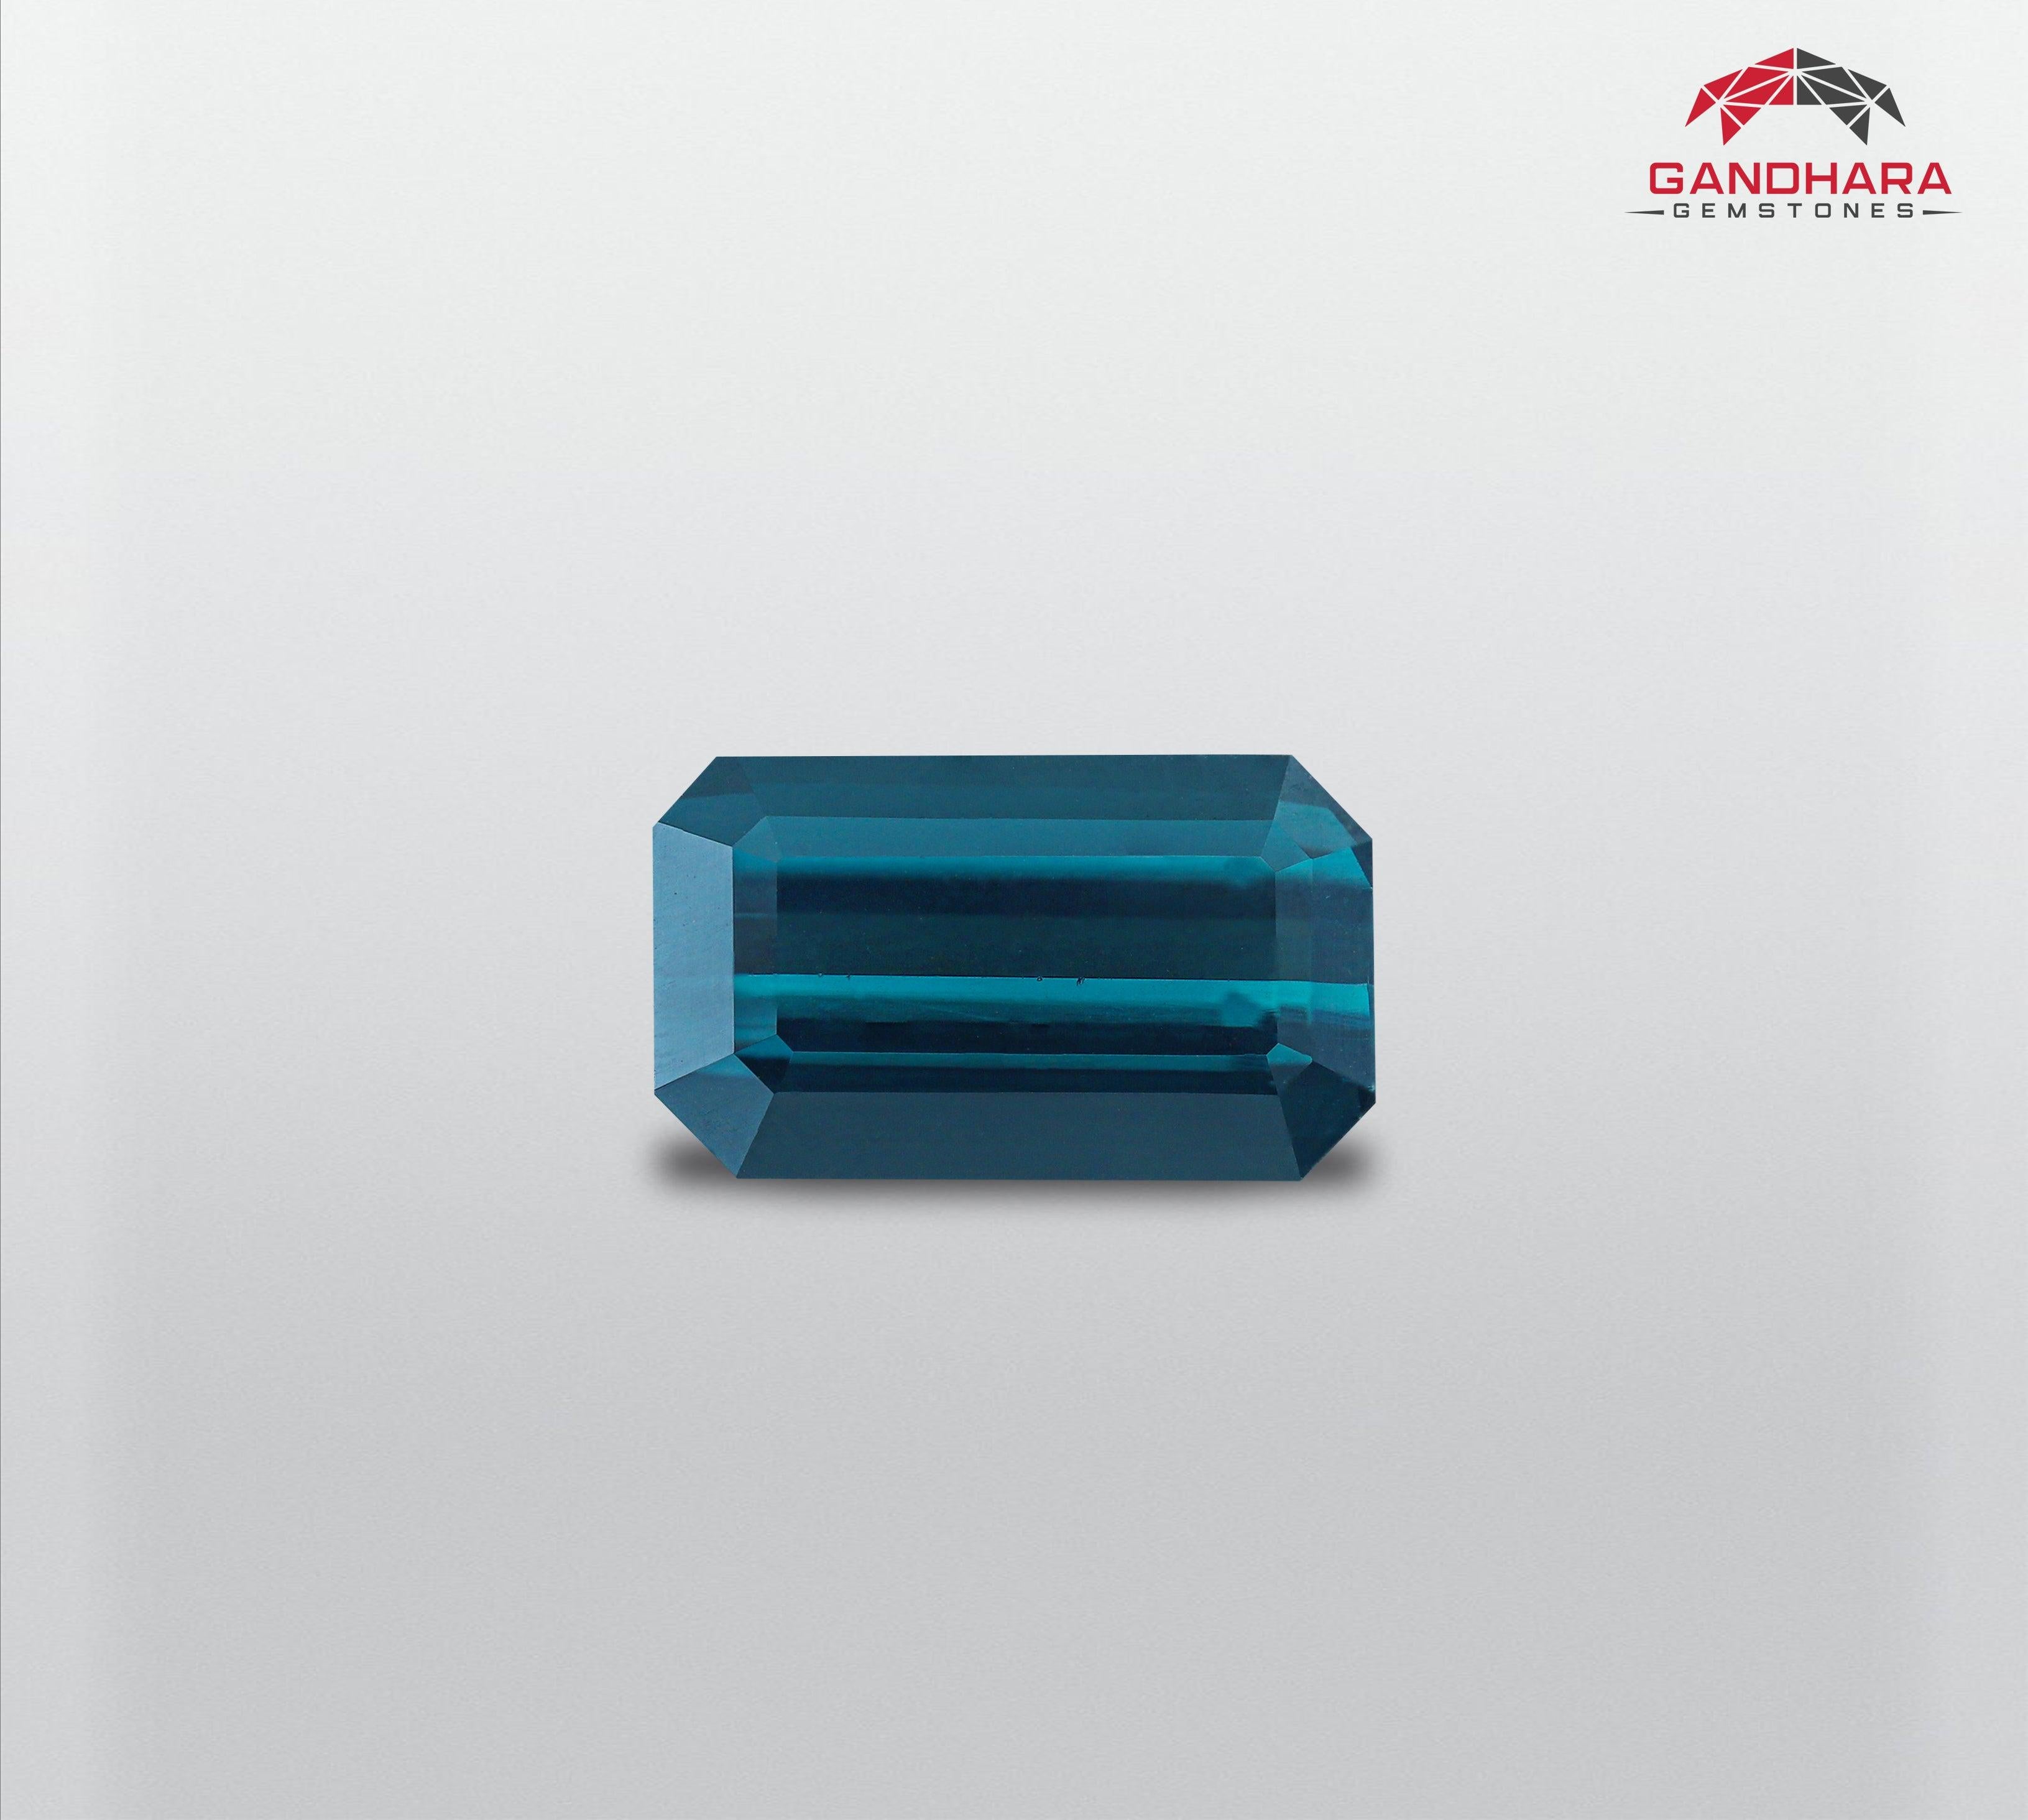 Tourmaline Indicolite Naturelle de 2.45 carats en provenance d'Afghanistan a une taille magnifique en forme d'octogone, une couleur bleu verdâtre incroyable. Une grande brillance. Cette pierre précieuse est totalement propre à l'œil.

Informations